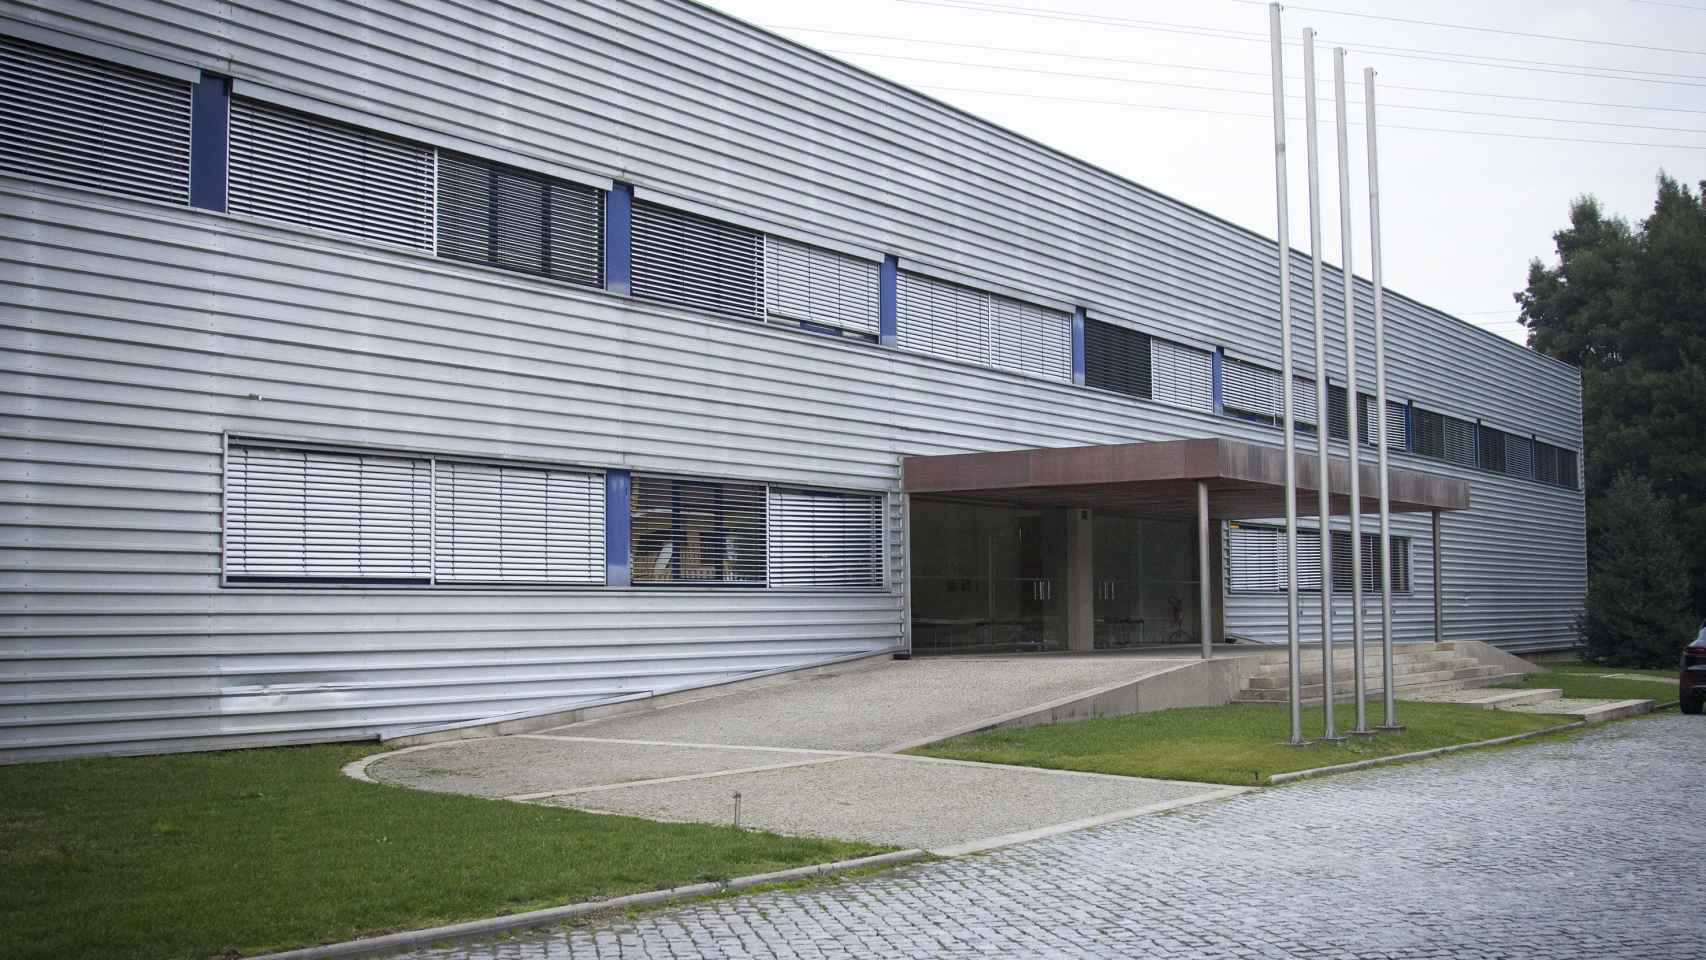 Entrada de la fábrica de Crispim Abreu en Serzedelo, Guimarães.